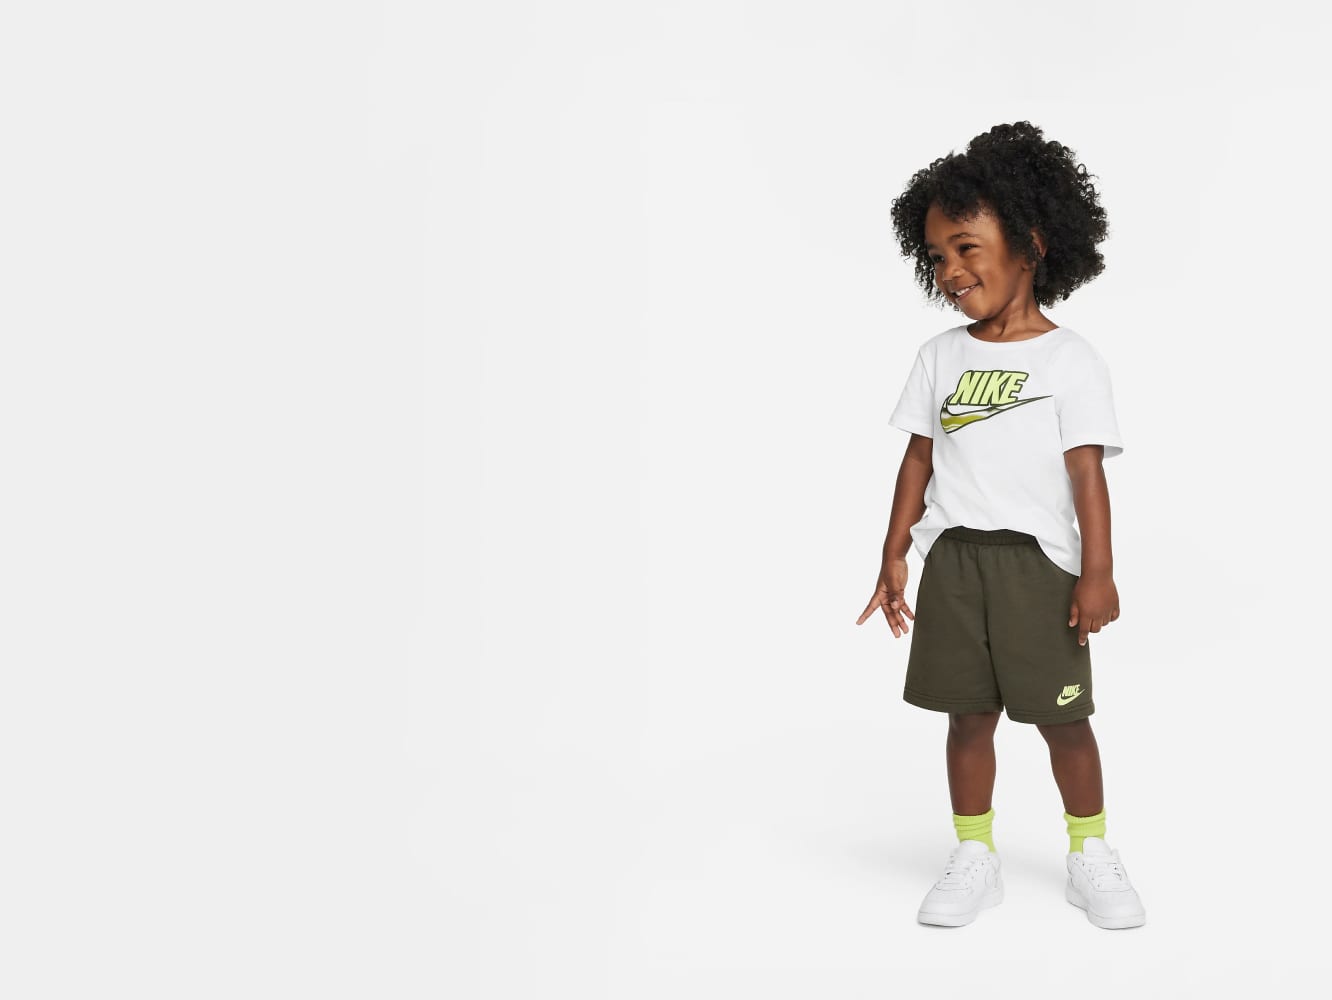 Realista deshonesto Entender mal Calzado, vestimenta y accesorios para niños Nike. Nike.com. Nike